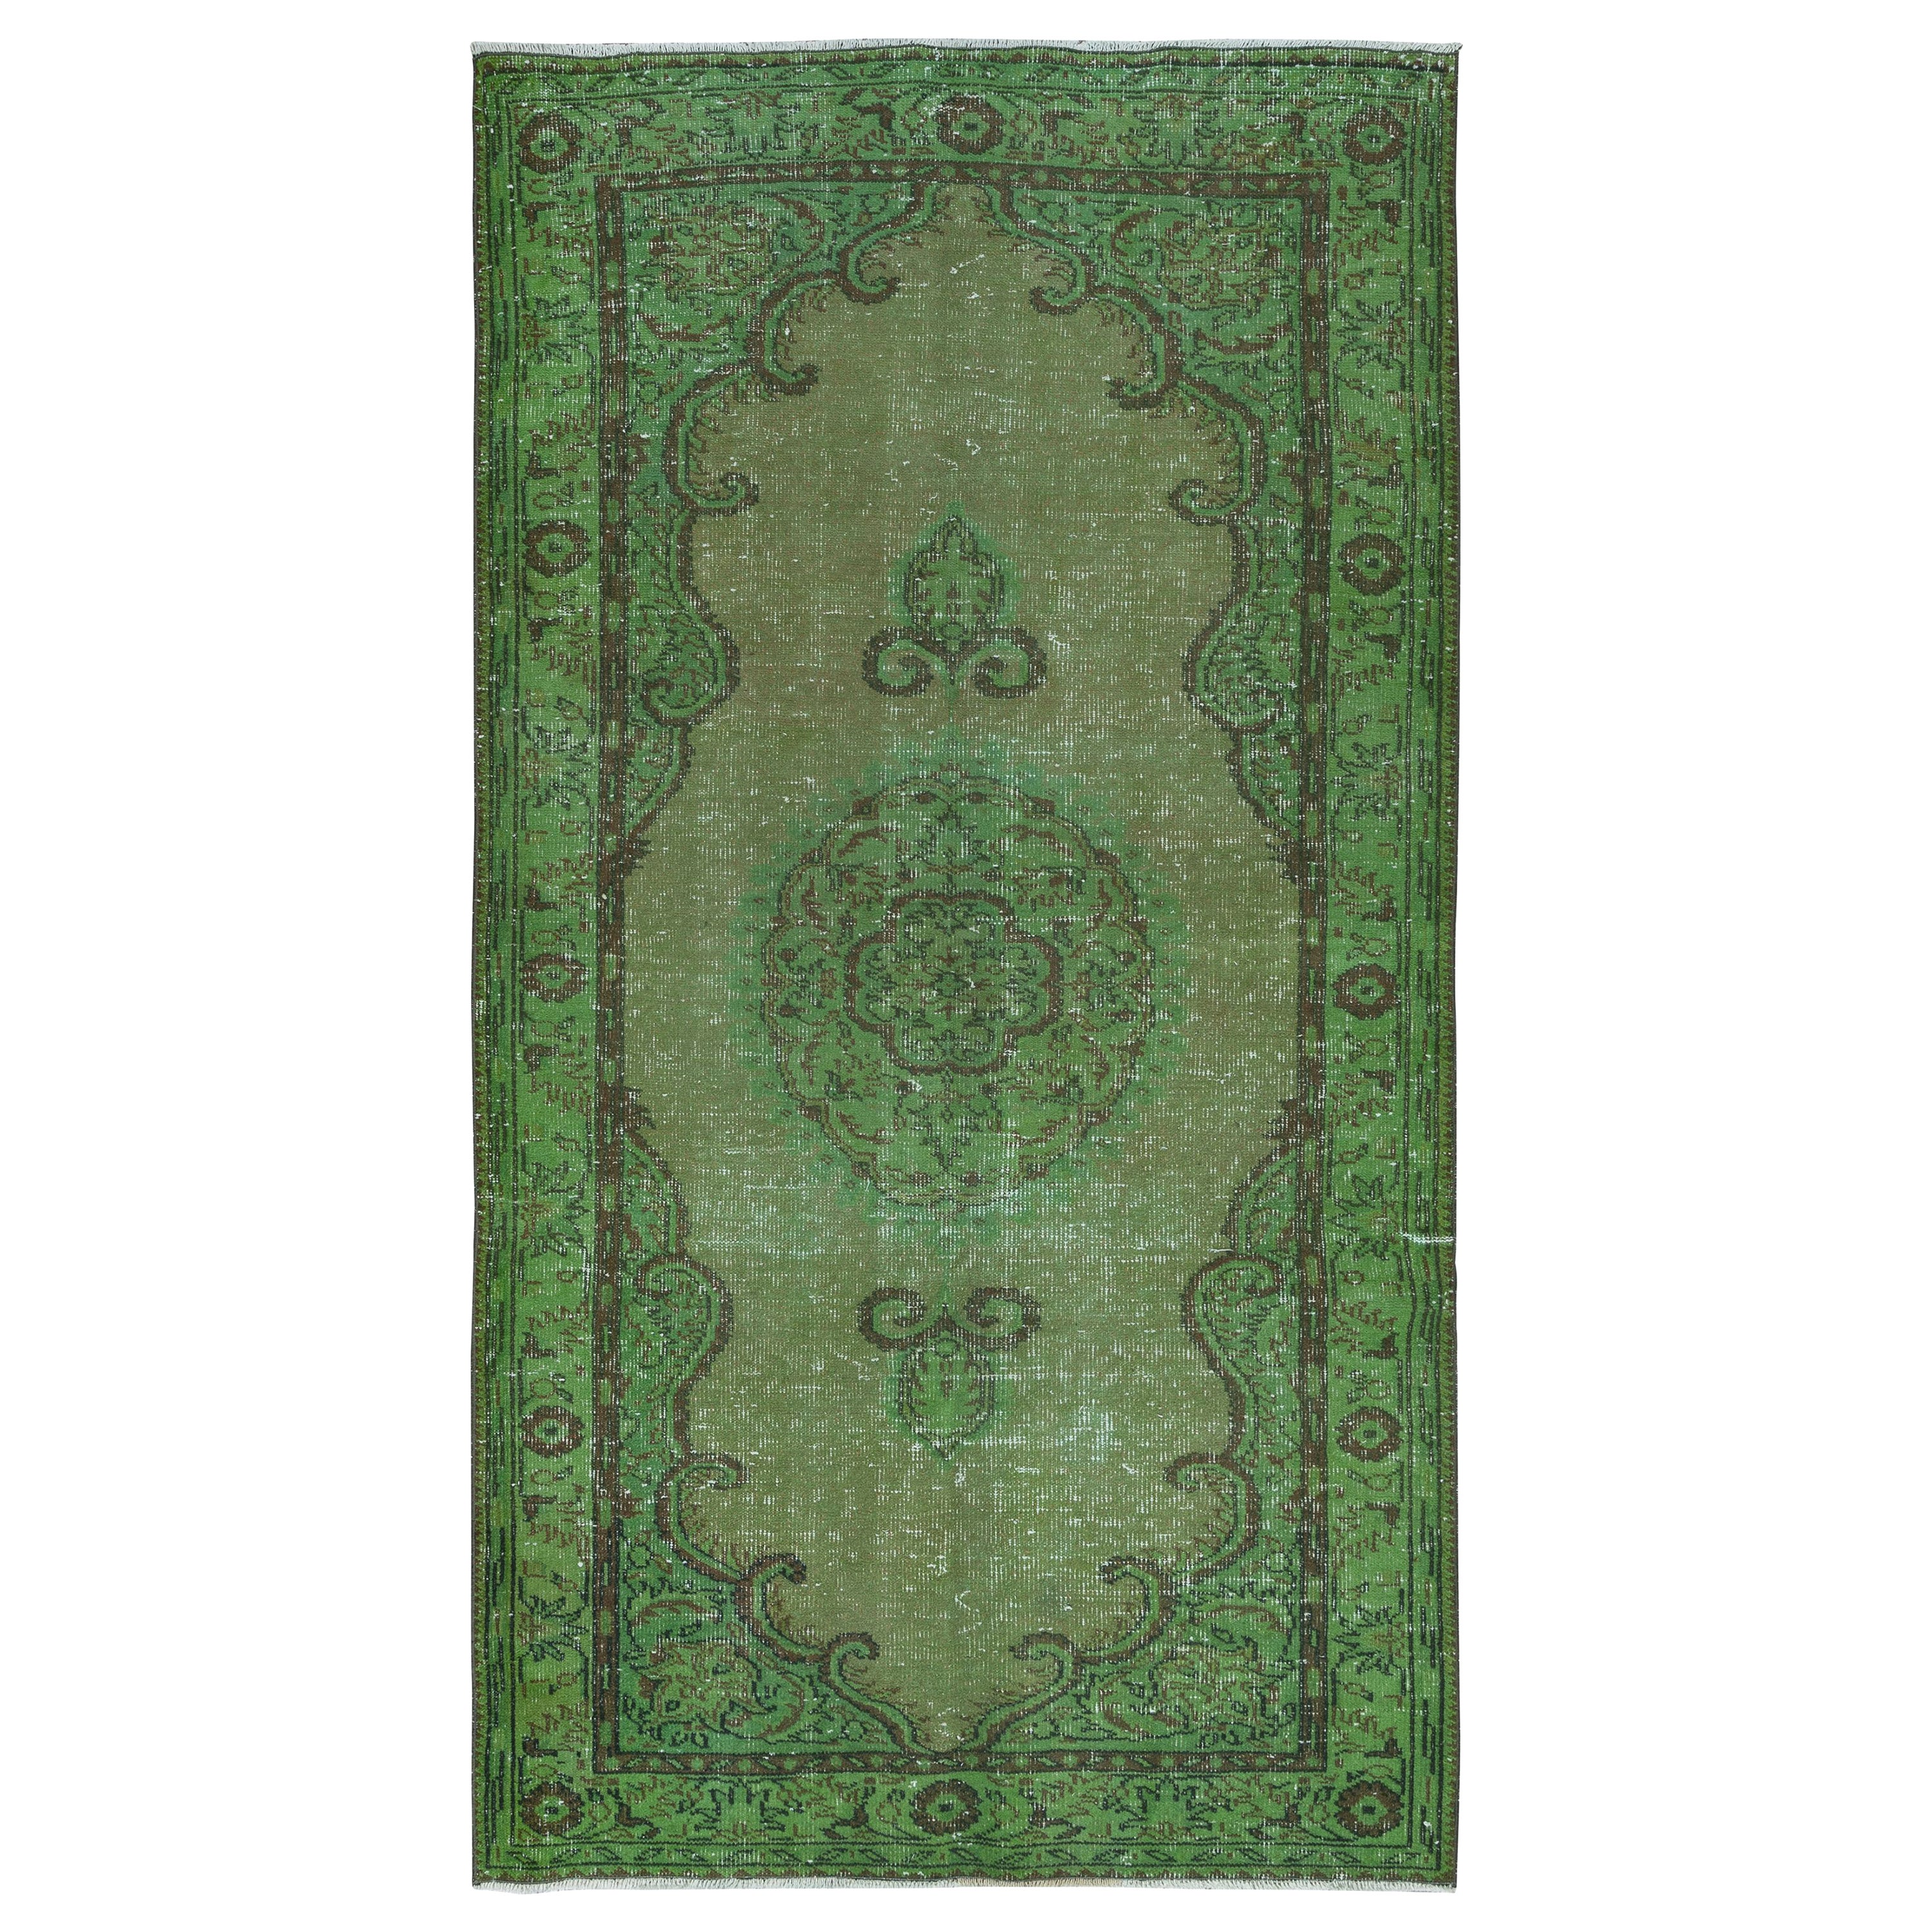 5x9 Ft Handmade Green Carpet from Turkey, Modern Living Room Decor Rug For Sale